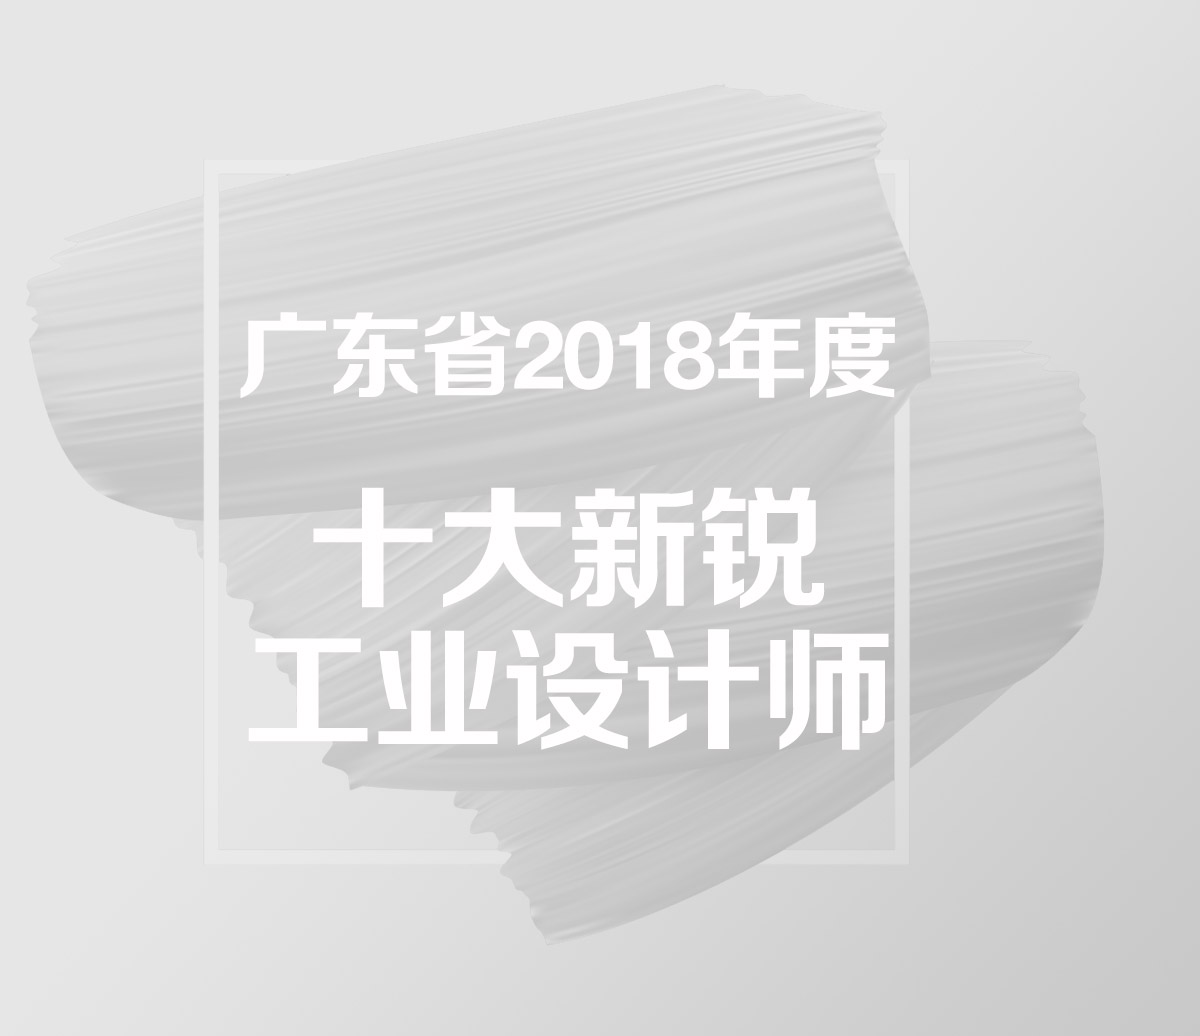 廣東省2018年度十大新銳工業設計師